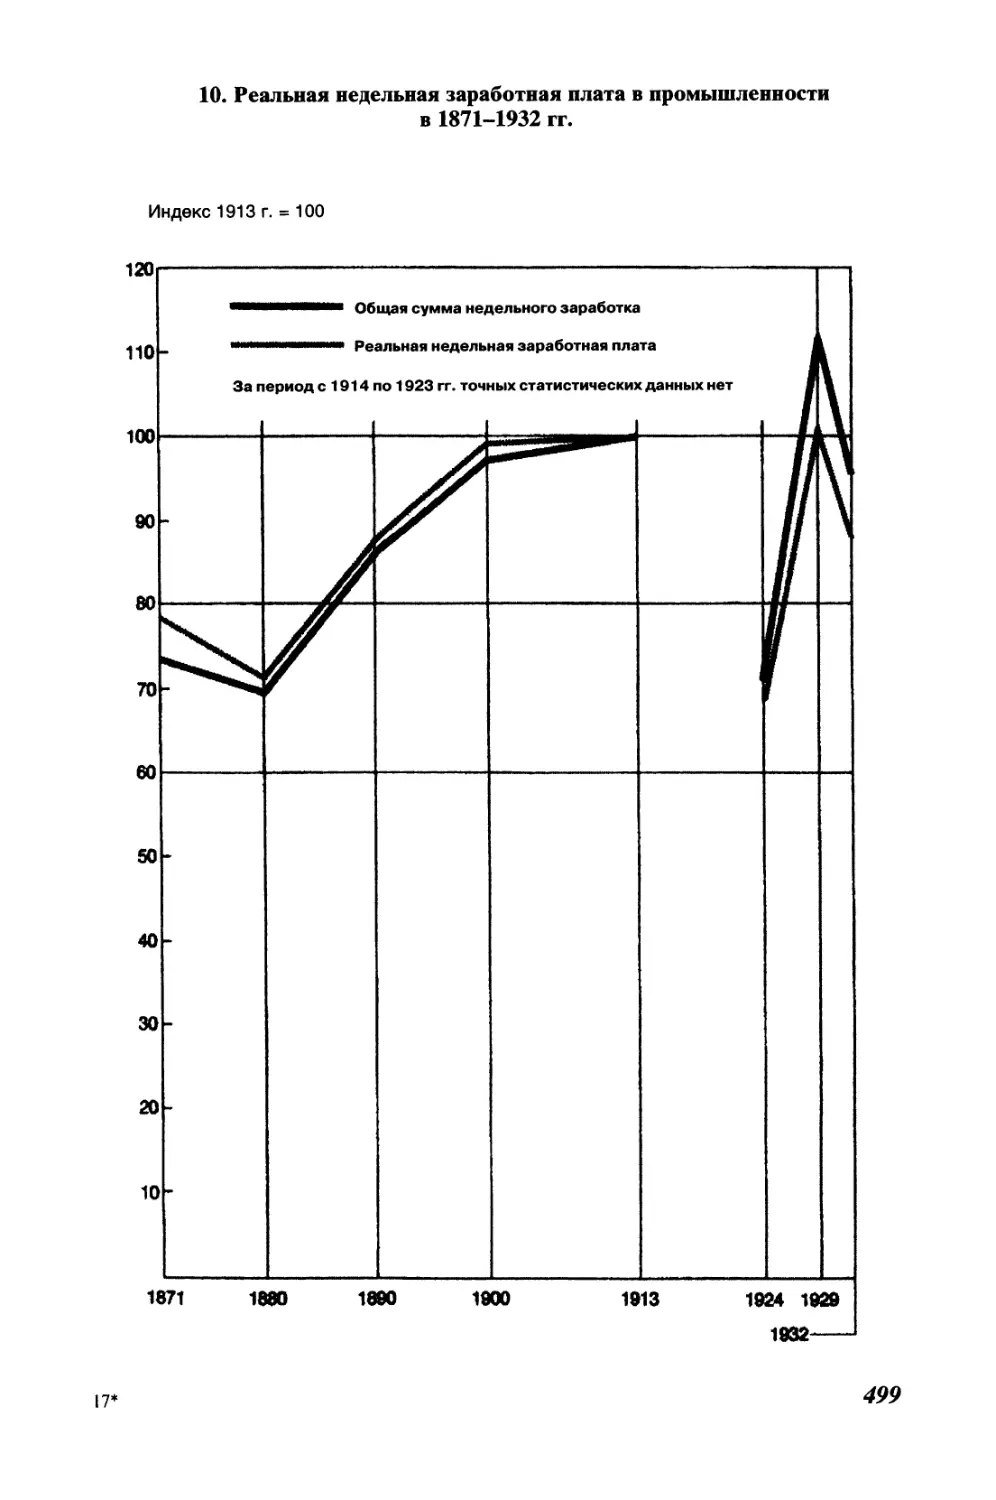 10. Реальная недельная заработная плата в промышленности в 1871-1932 гг